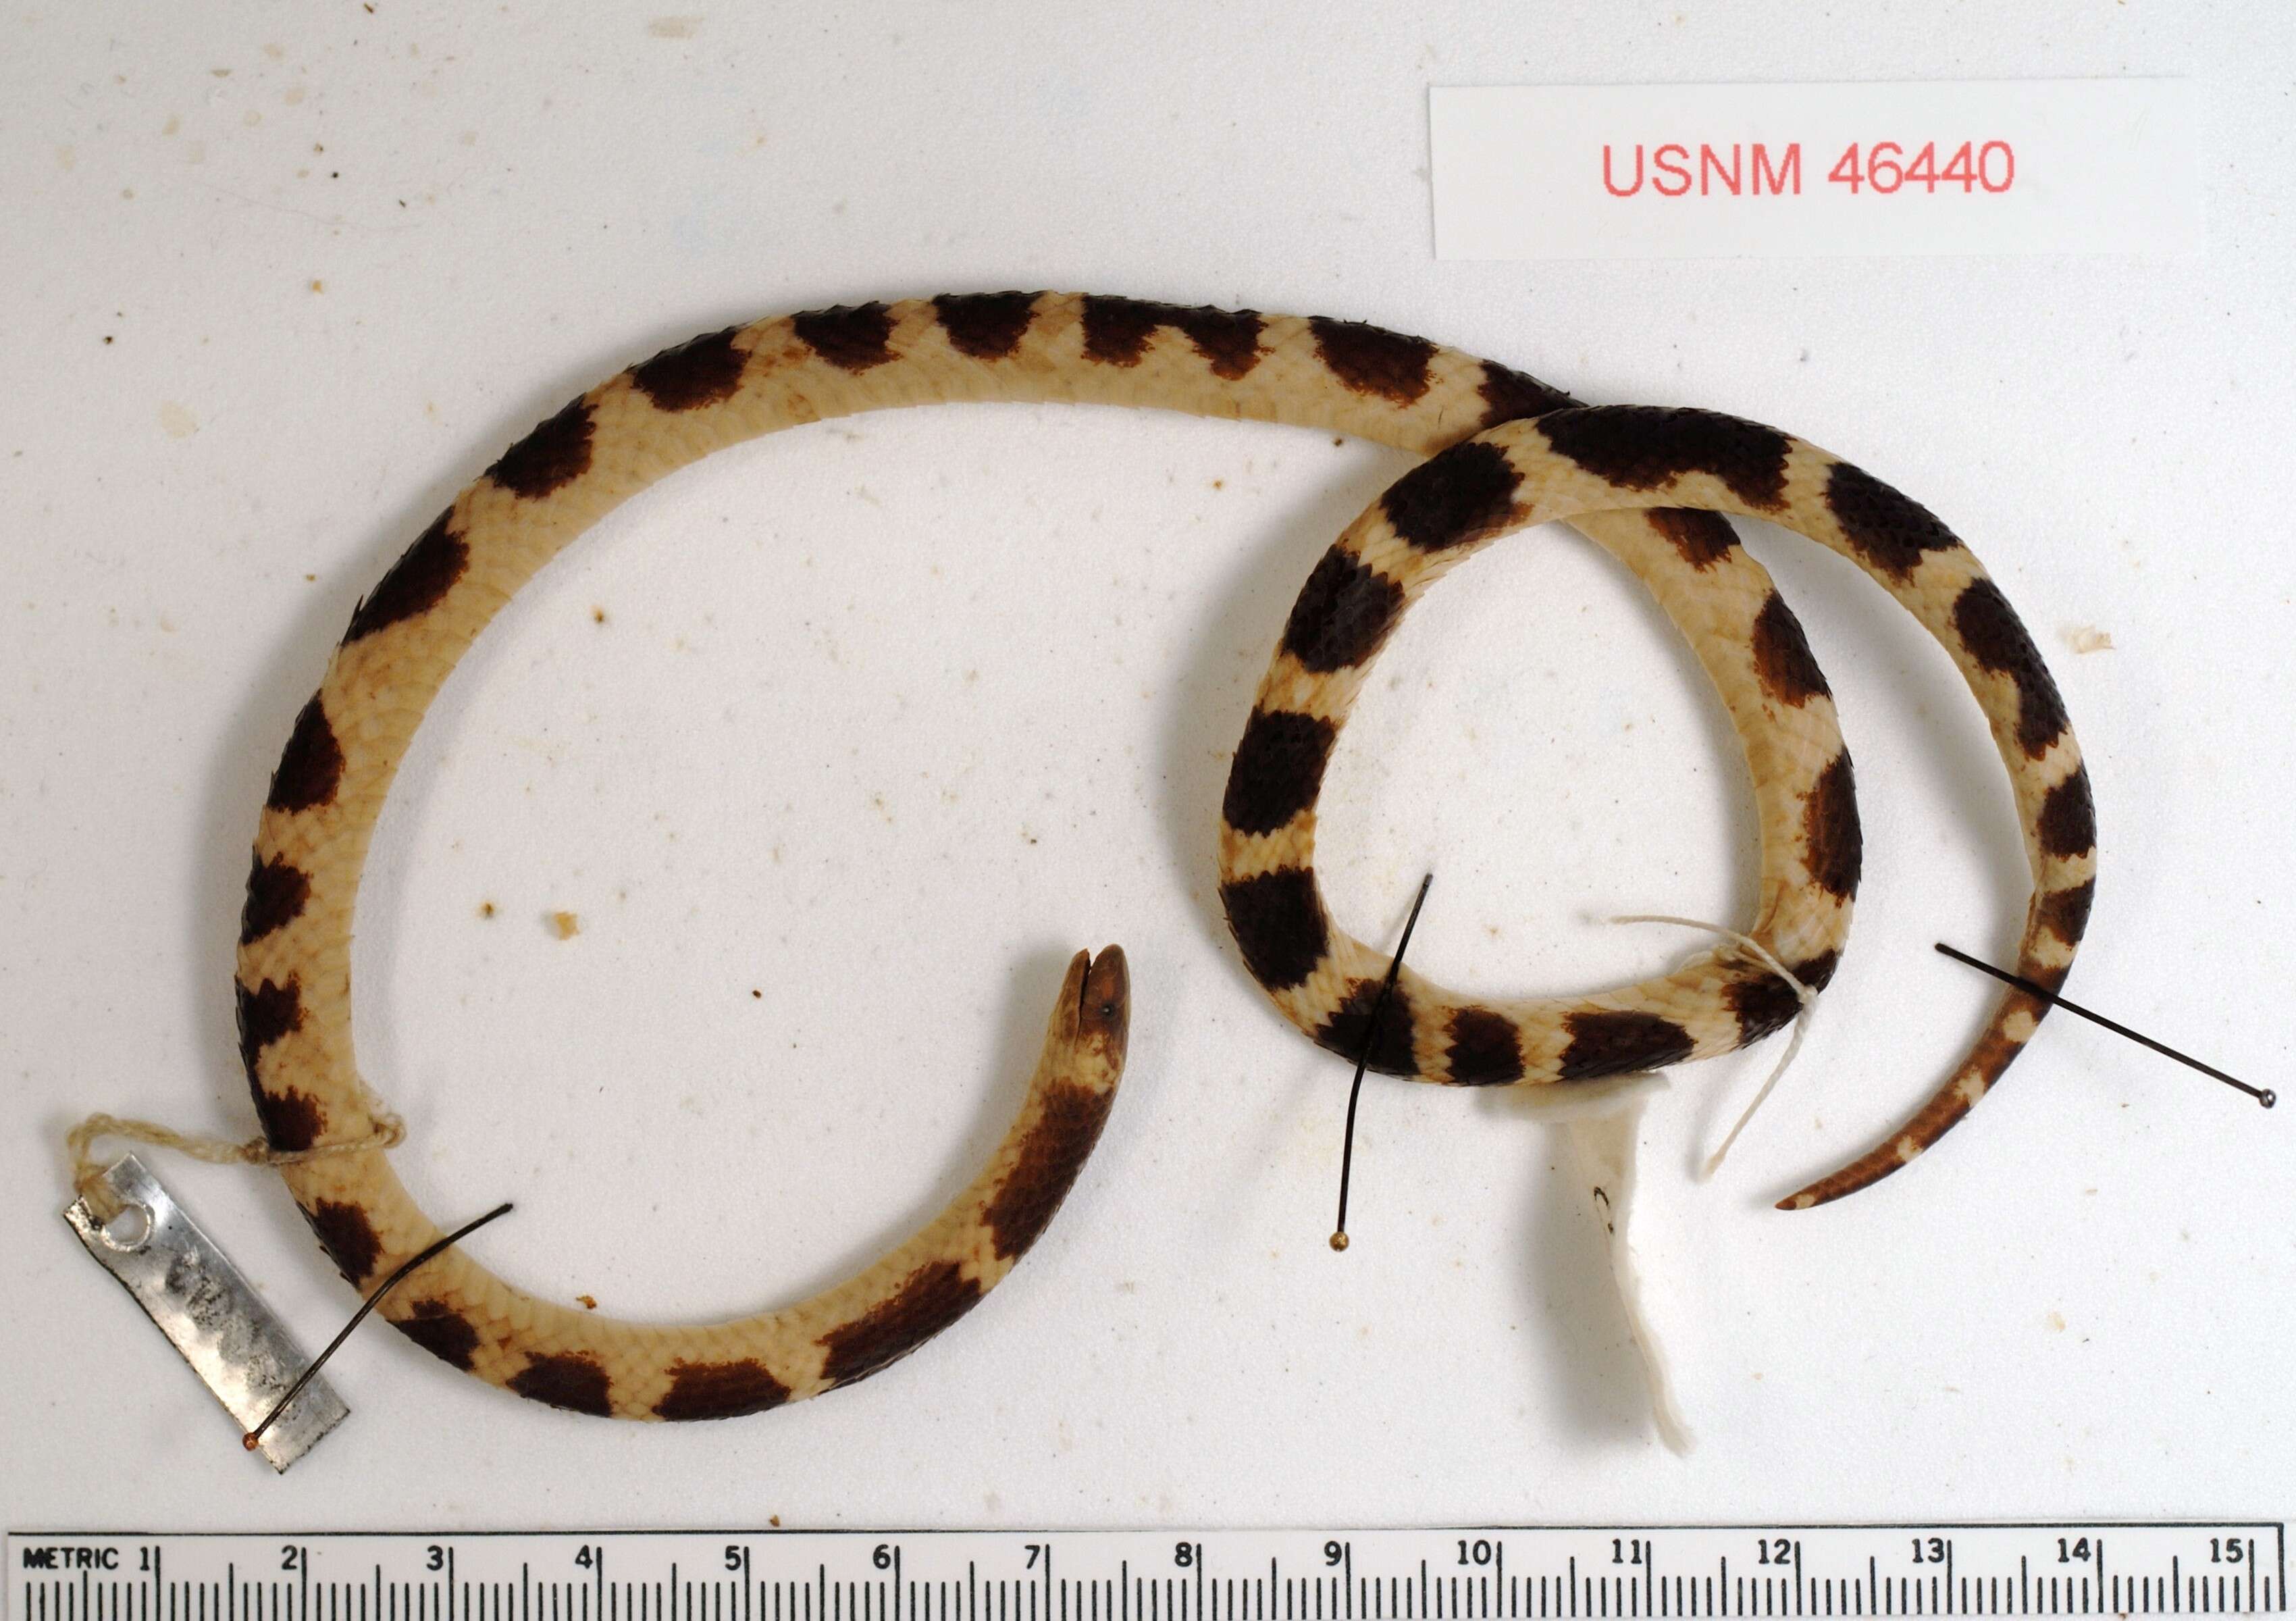 Image of Chiapas Earth Snake